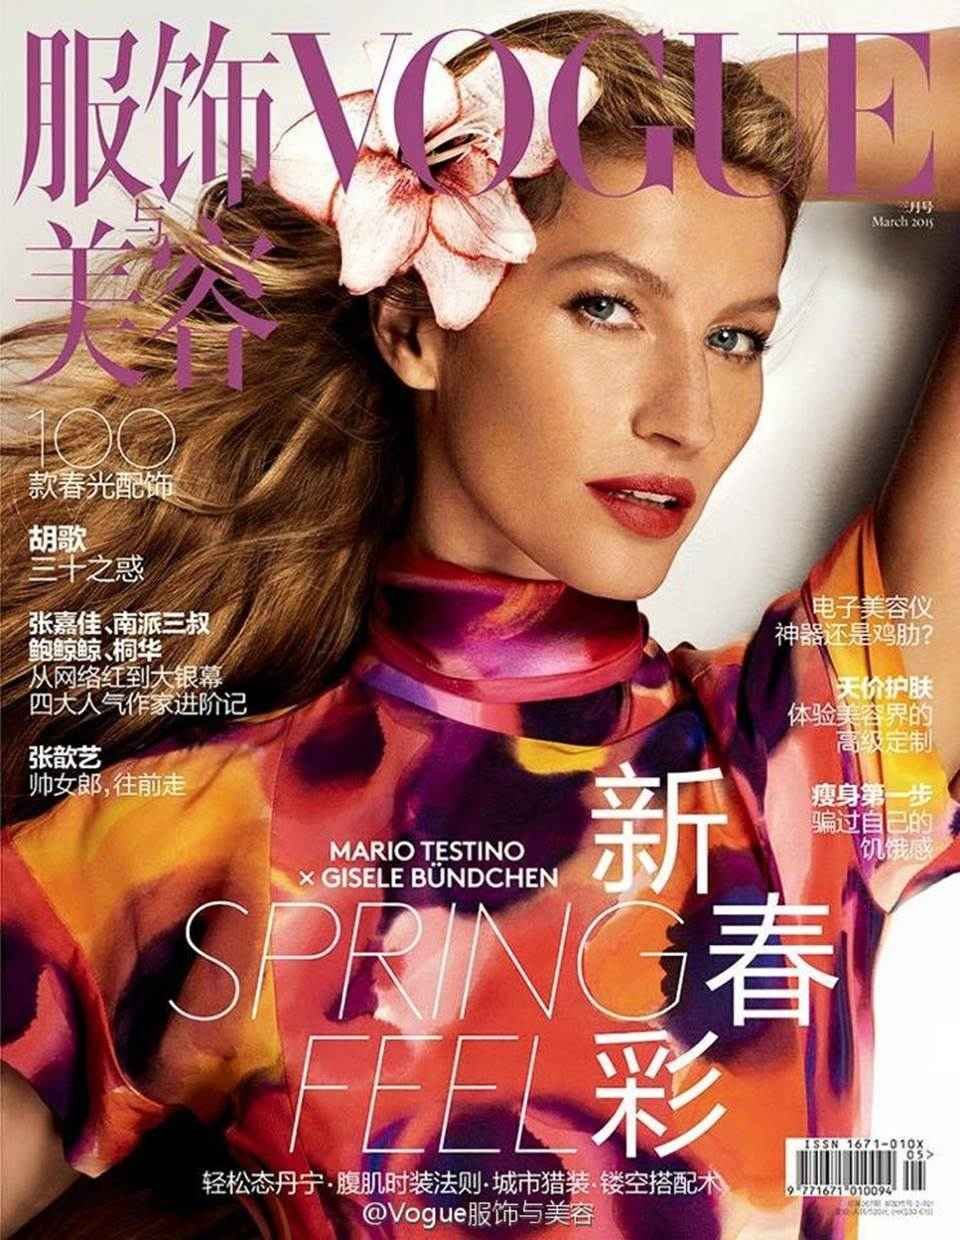 Reprodução/Vogue China